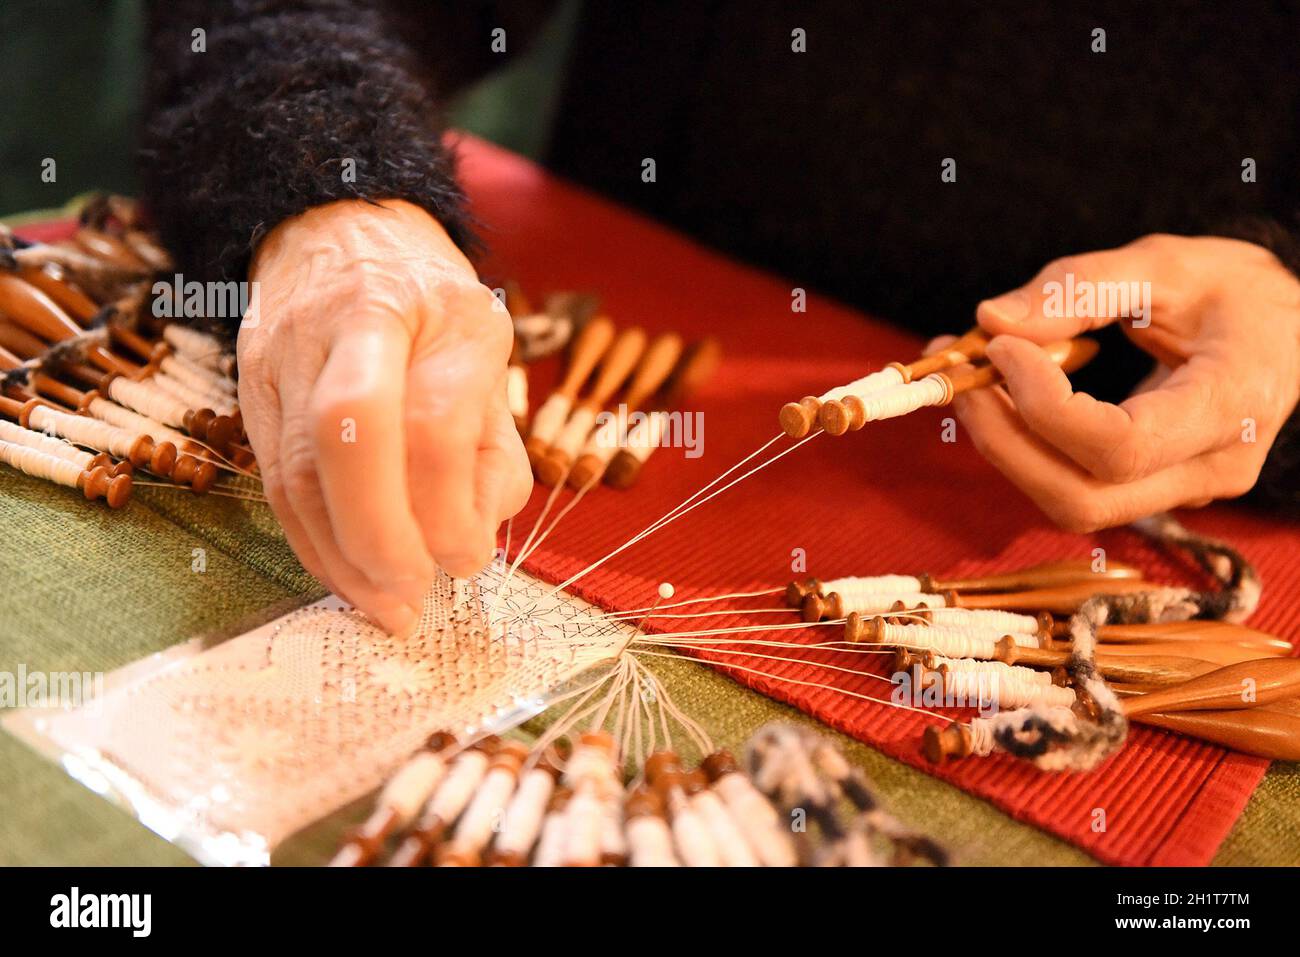 Die alte Handwerkstechnik des Klöppelns in Österreich - The old craft technique of lace making in Austria Stock Photo